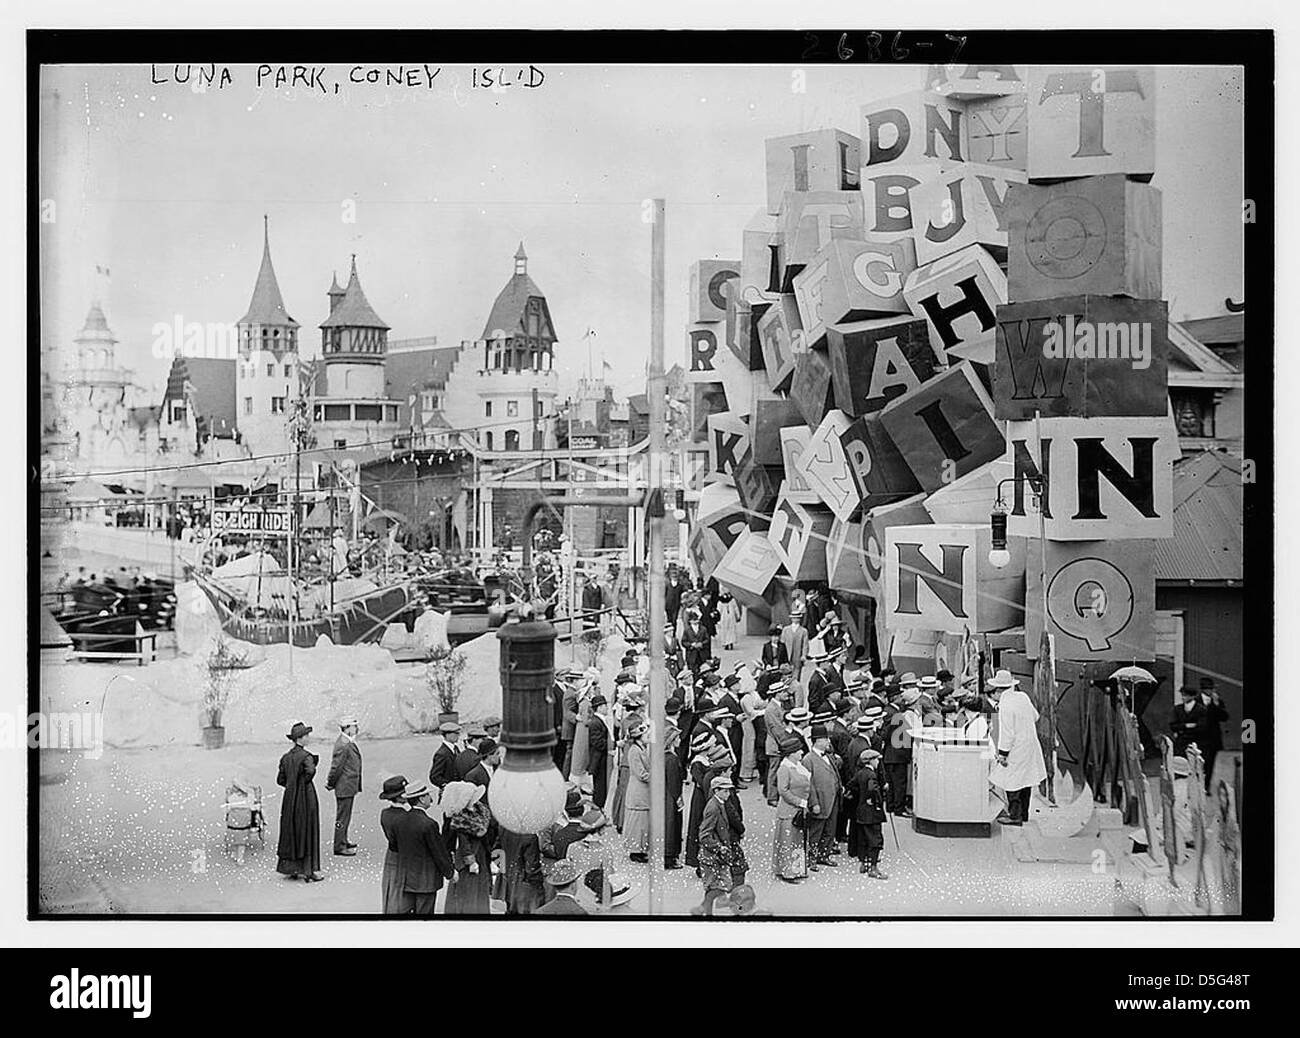 Luna Park, Coney Isl. (LOC) Stock Photo